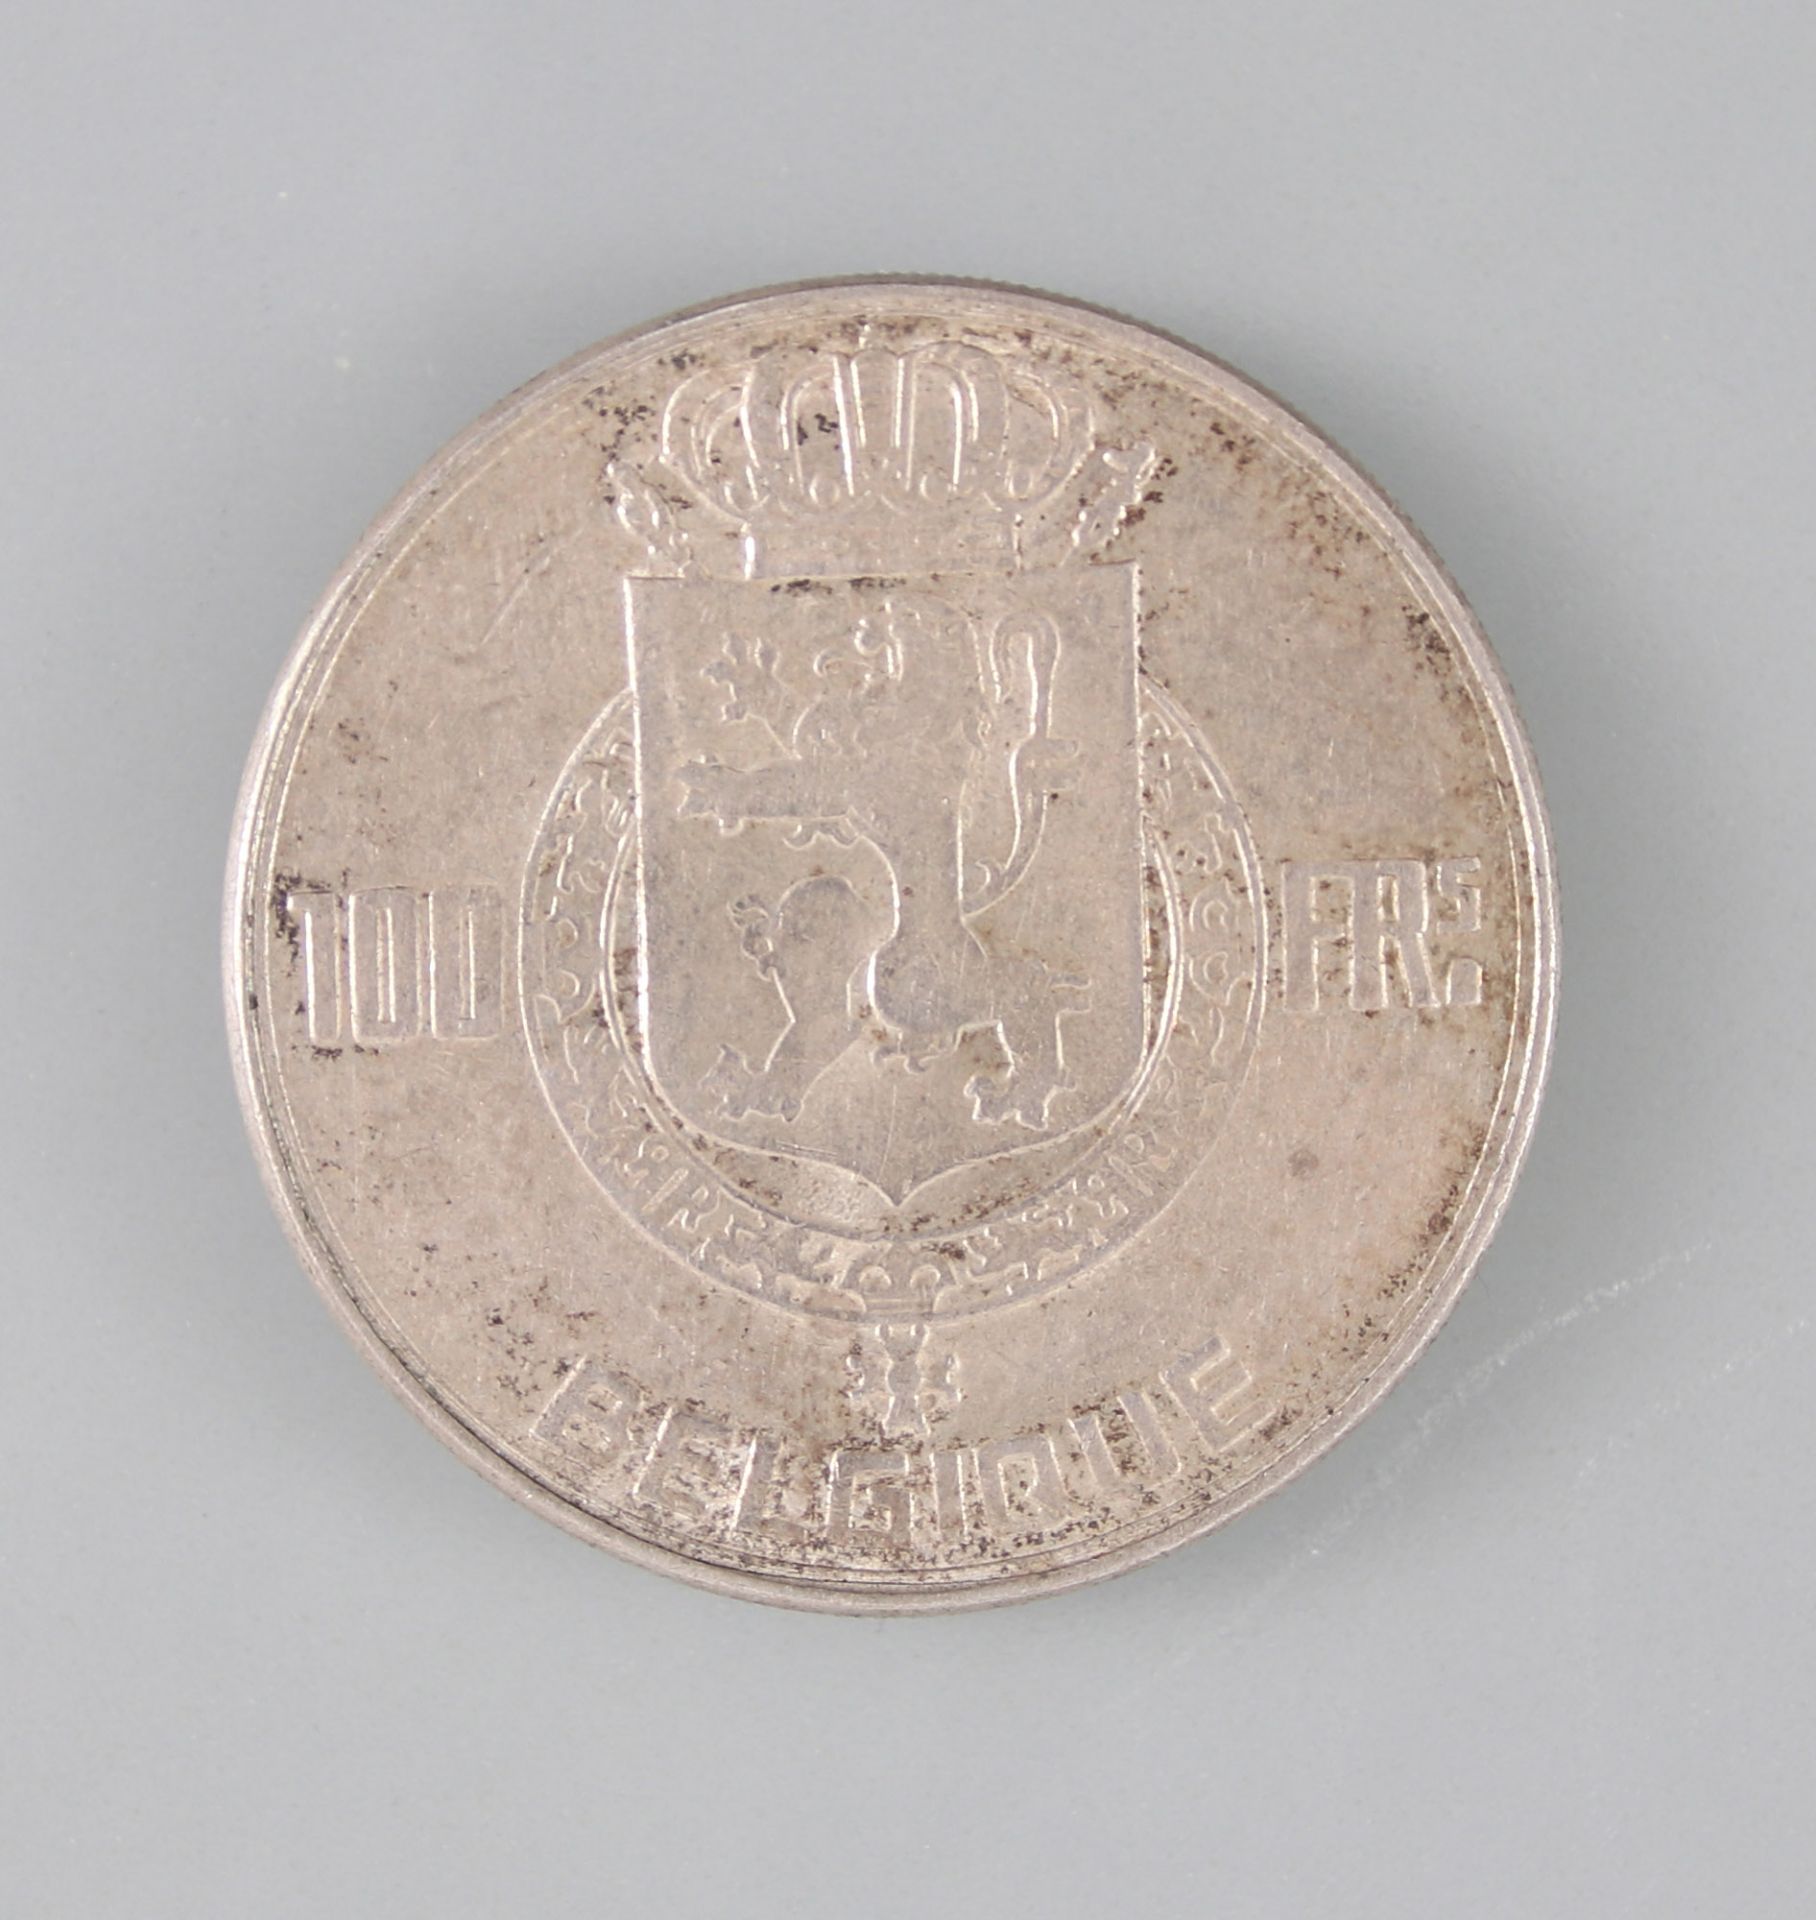 Silber-Münze 100 Francs Belgien 1950 - Image 2 of 2